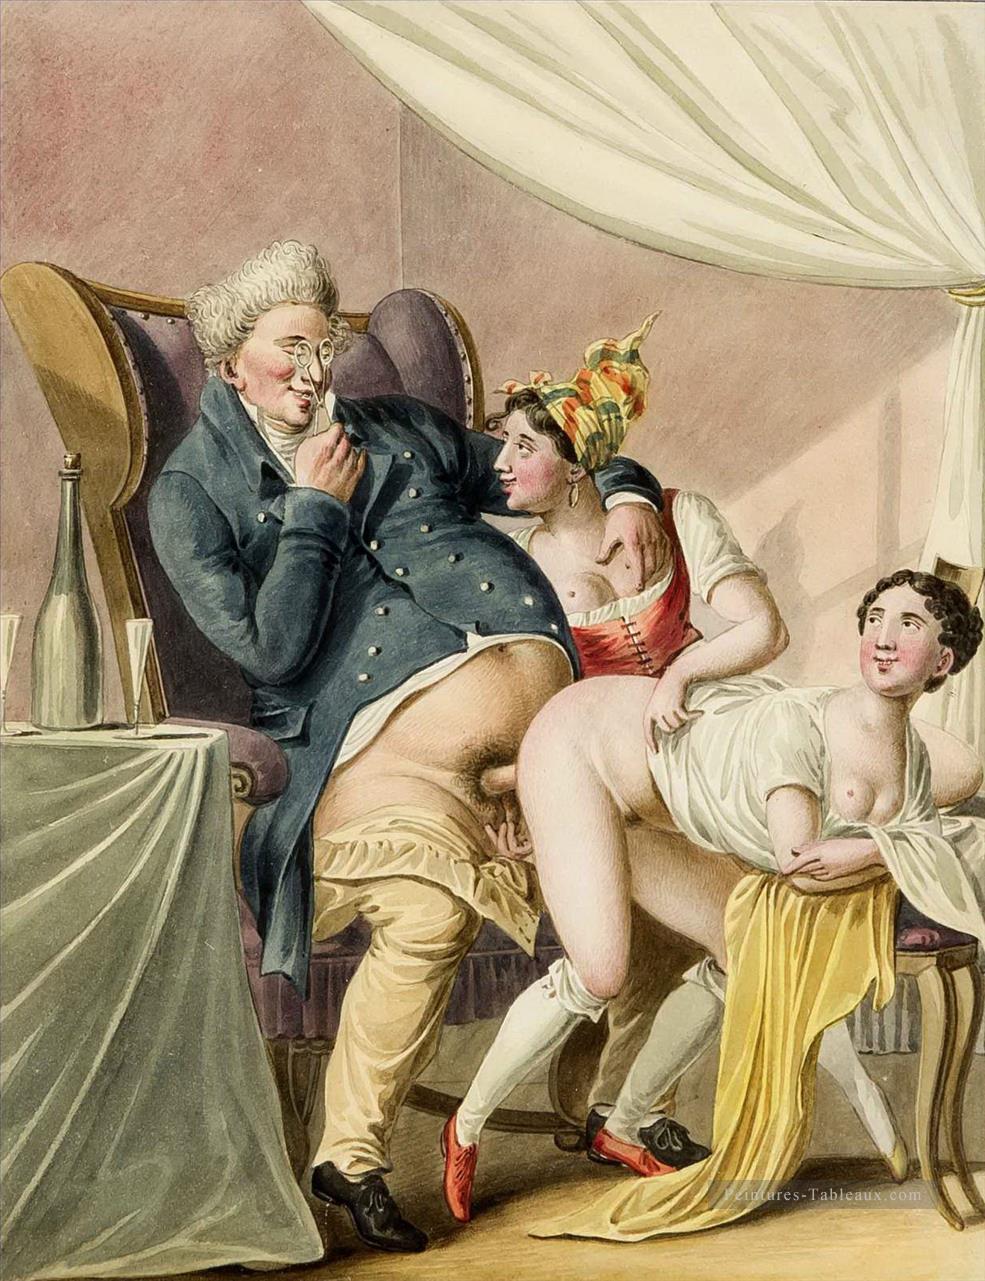 Erotische biskarikierende darde eines Mannes beim Verkehr mit zwei Damen Georg Emanuel Opiz caricature sexuelle Peintures à l'huile